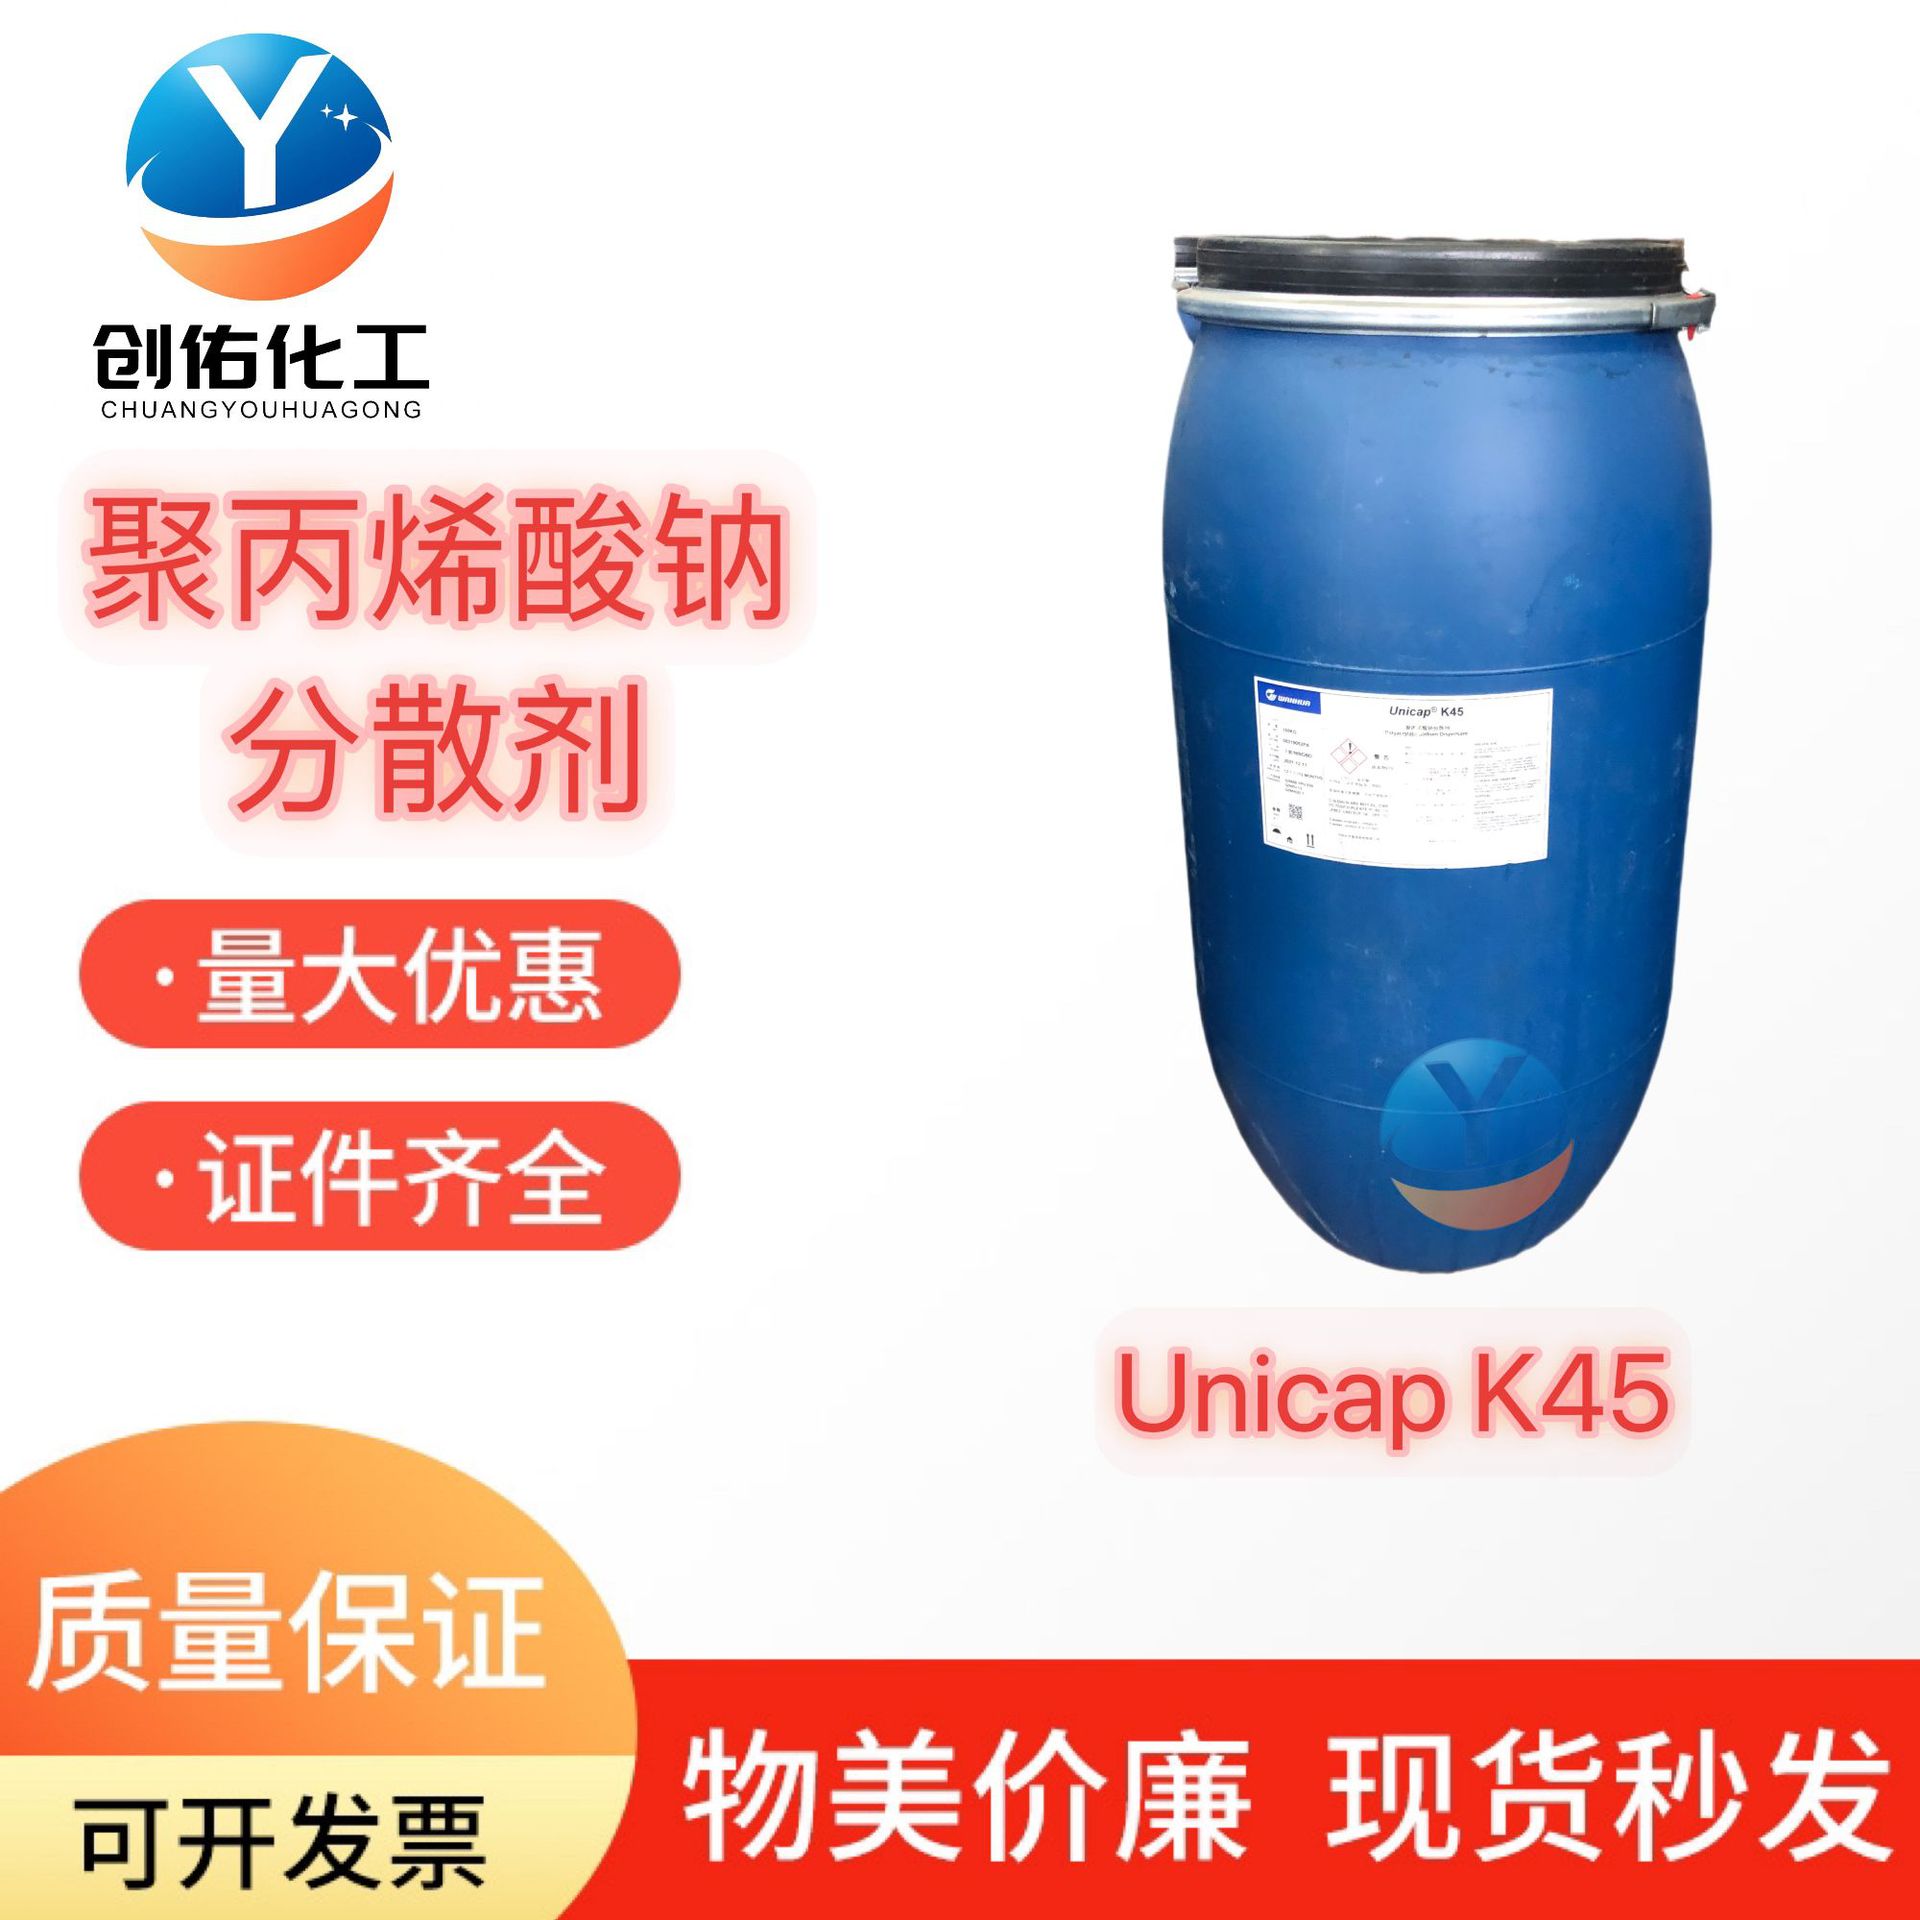 聚丙烯酸钠广州现货Unicap K45家居工业分散剂 聚丙烯酸钠